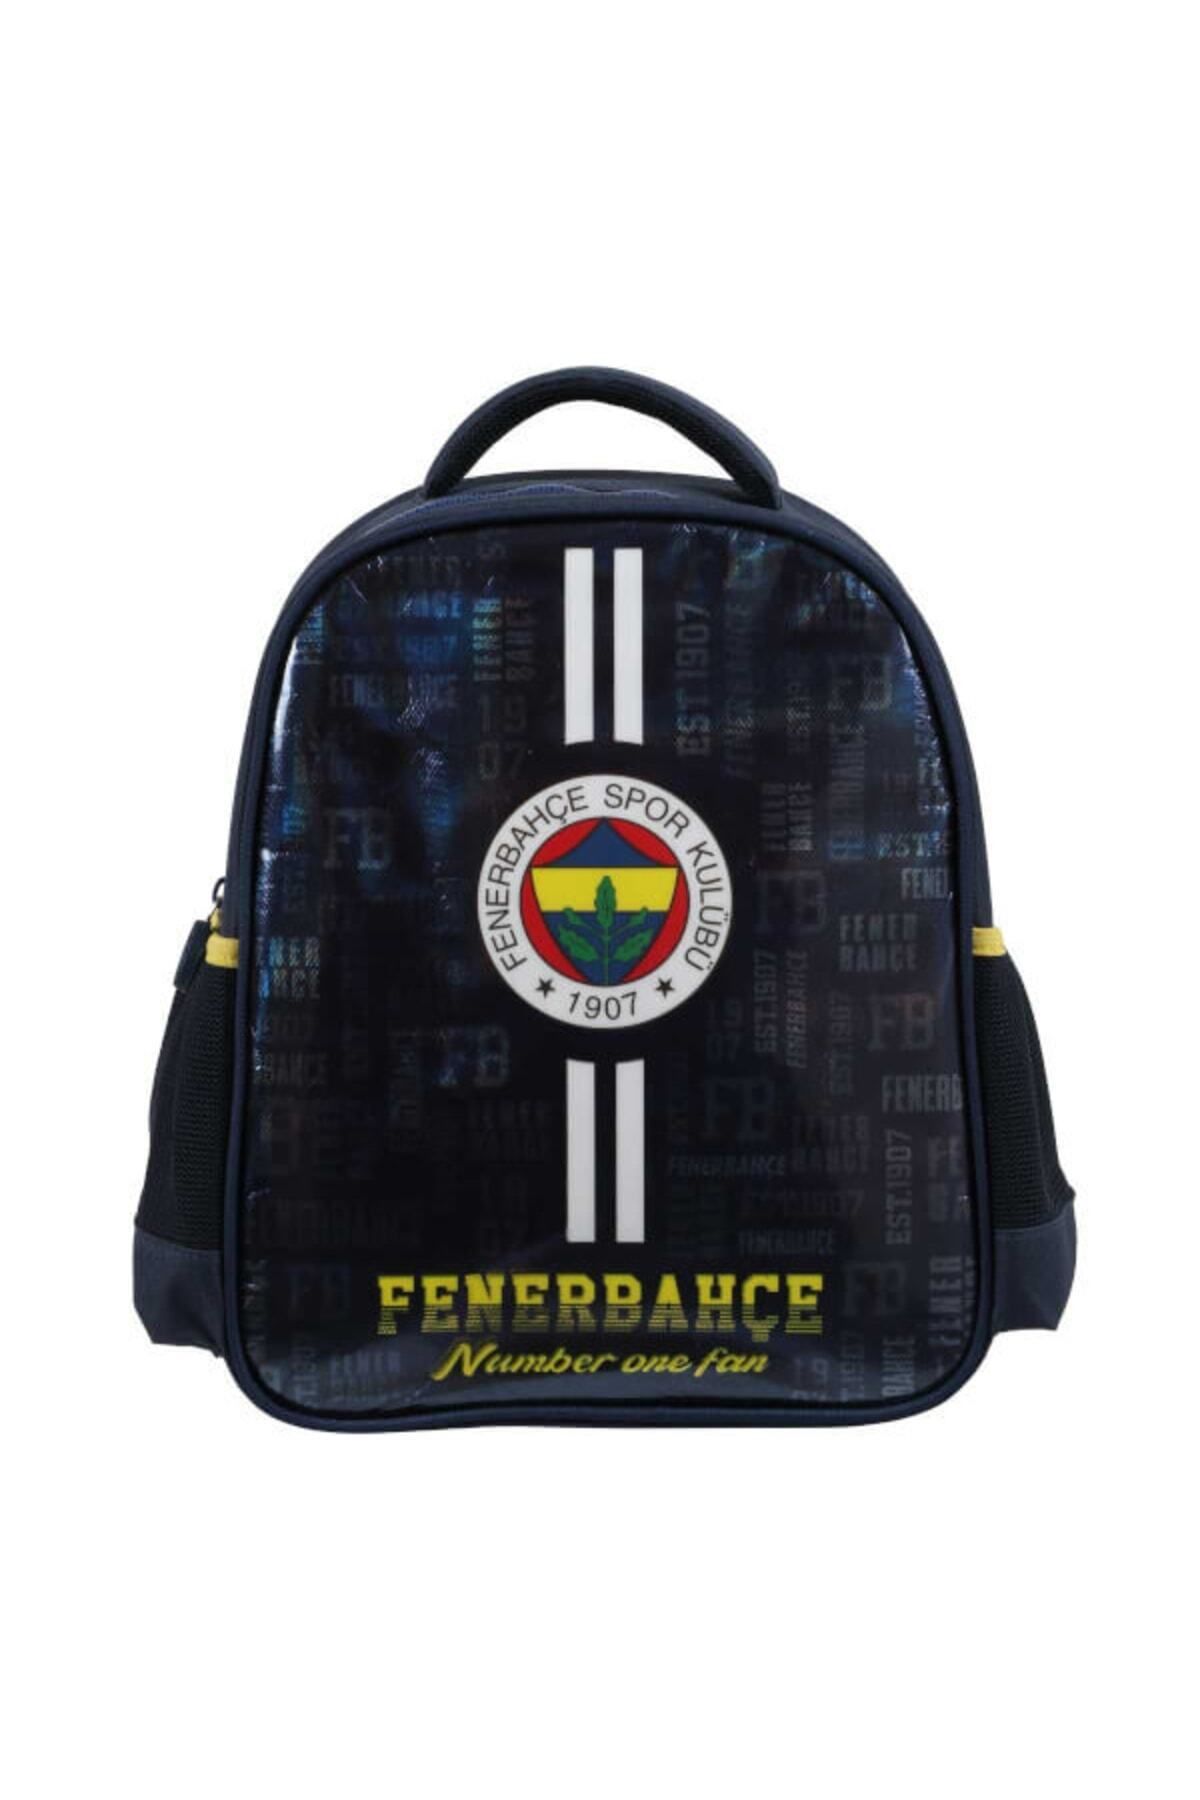 Ottonya Fenerbahçe Anaokul Çantası 3624